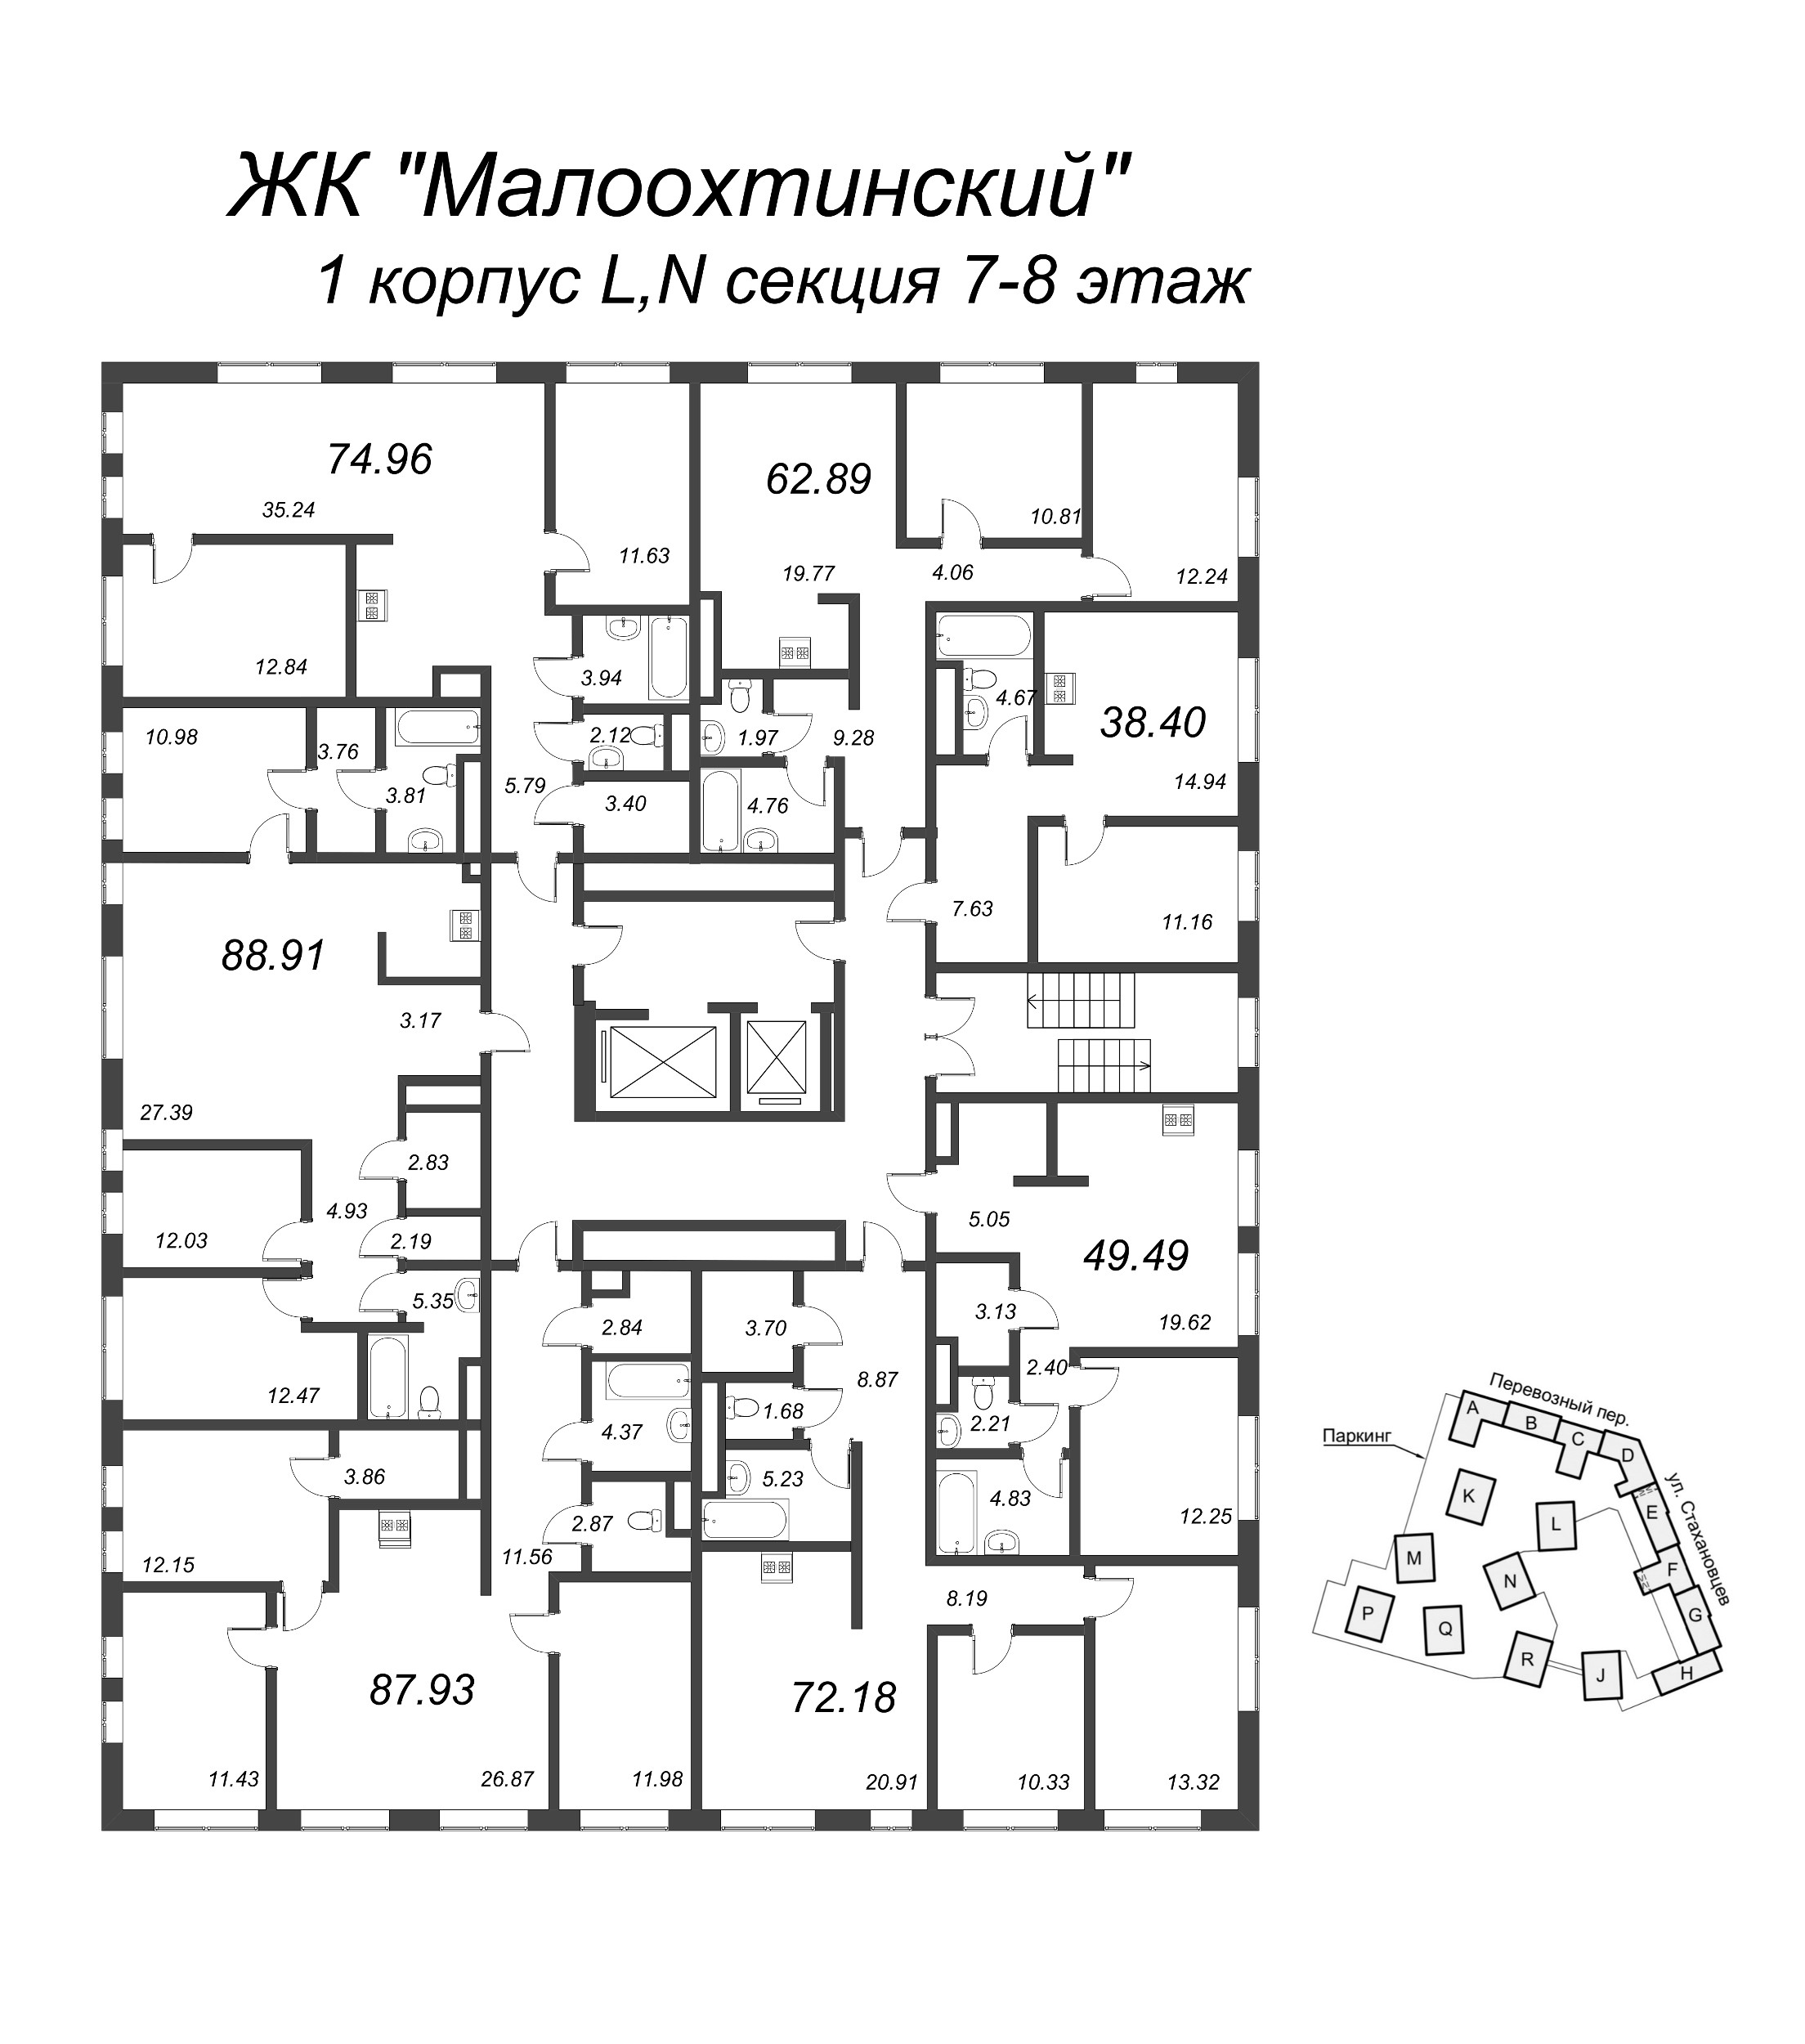 2-комнатная (Евро) квартира, 40.4 м² в ЖК "Малоохтинский, 68" - планировка этажа